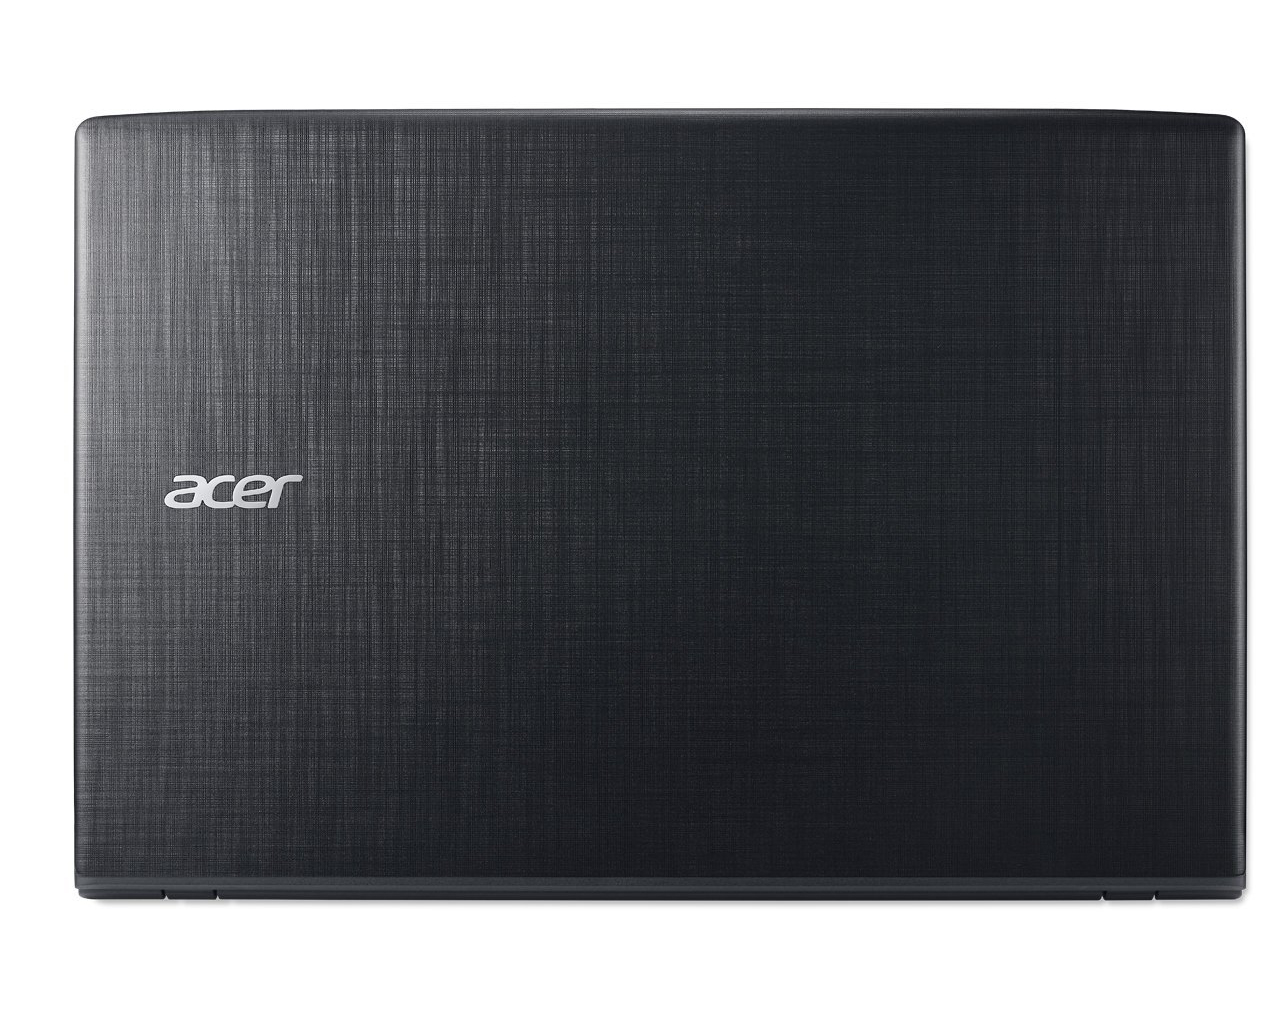 Acer Aspire E15 E5-576G-5762